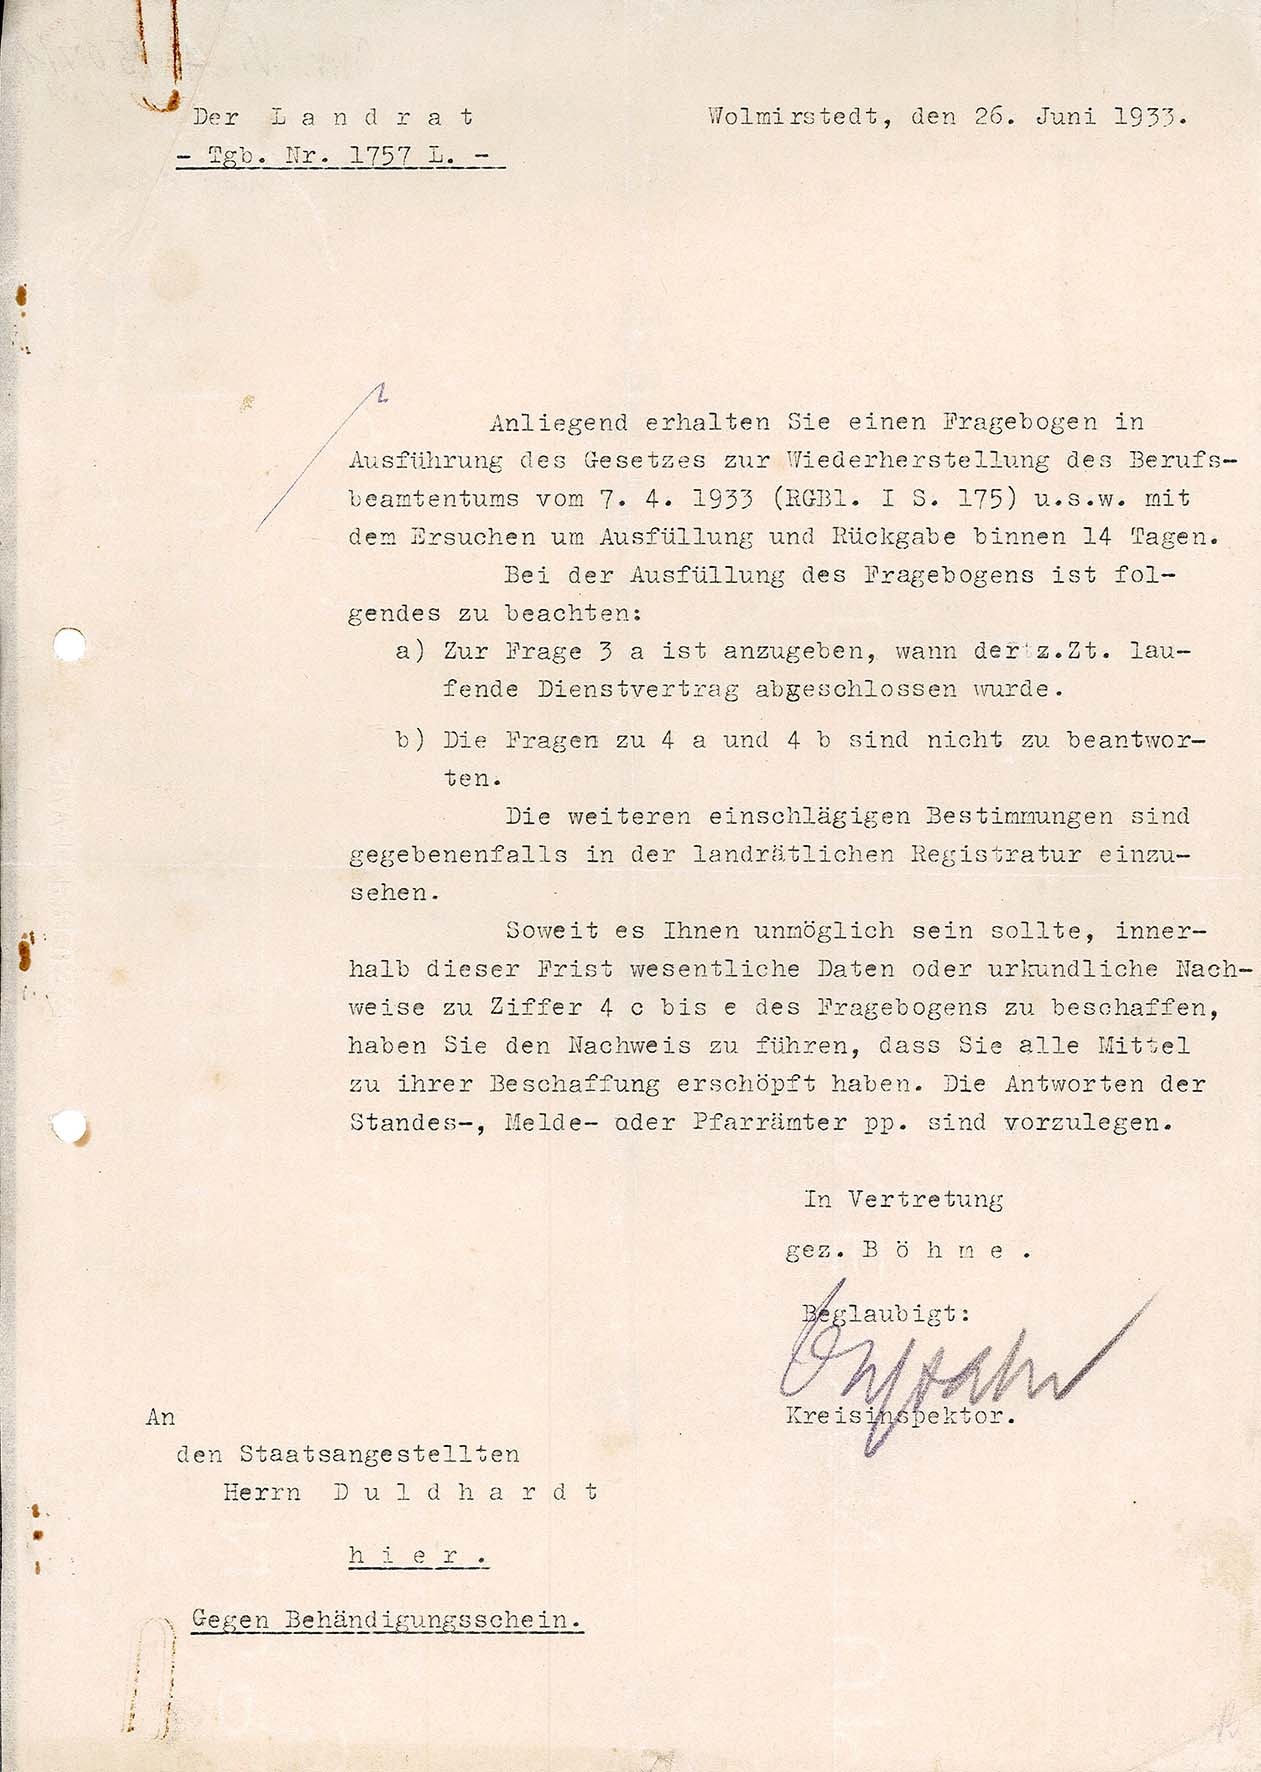 Anschreiben zum Fragebogen zur Durchführung des Gesetzes zur Wiederherstellung des Berufsbeamtentums vom 7. April 1933, 26. Juni 1933 (Museum Wolmirstedt RR-F)